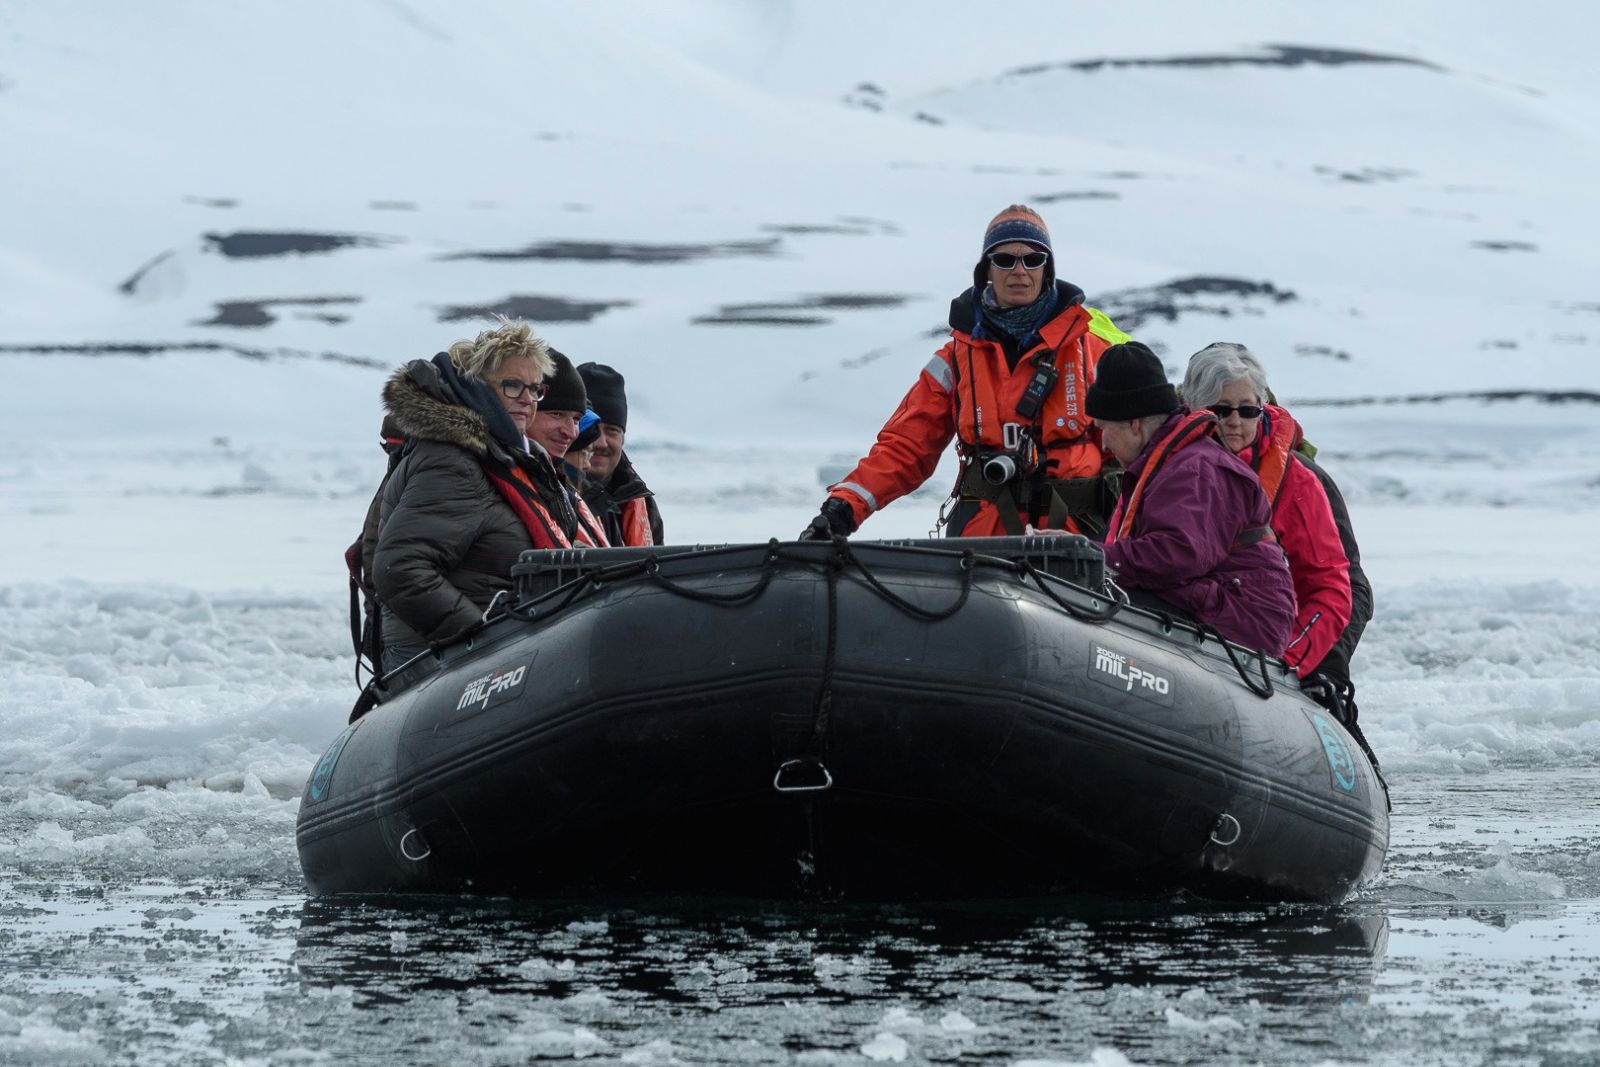 Expeditionsguide Sandra steuert das Zodiac sicher durch das Eis